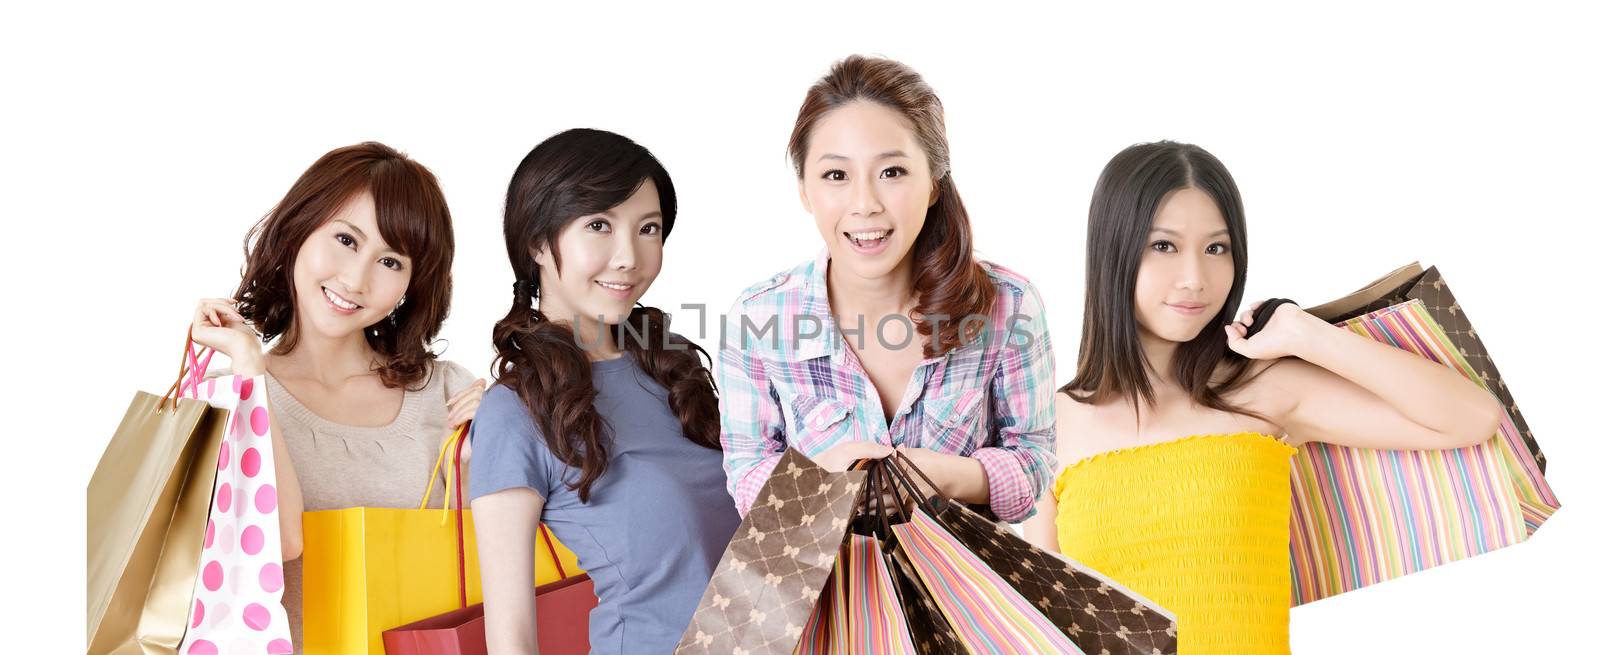 shopping women by elwynn